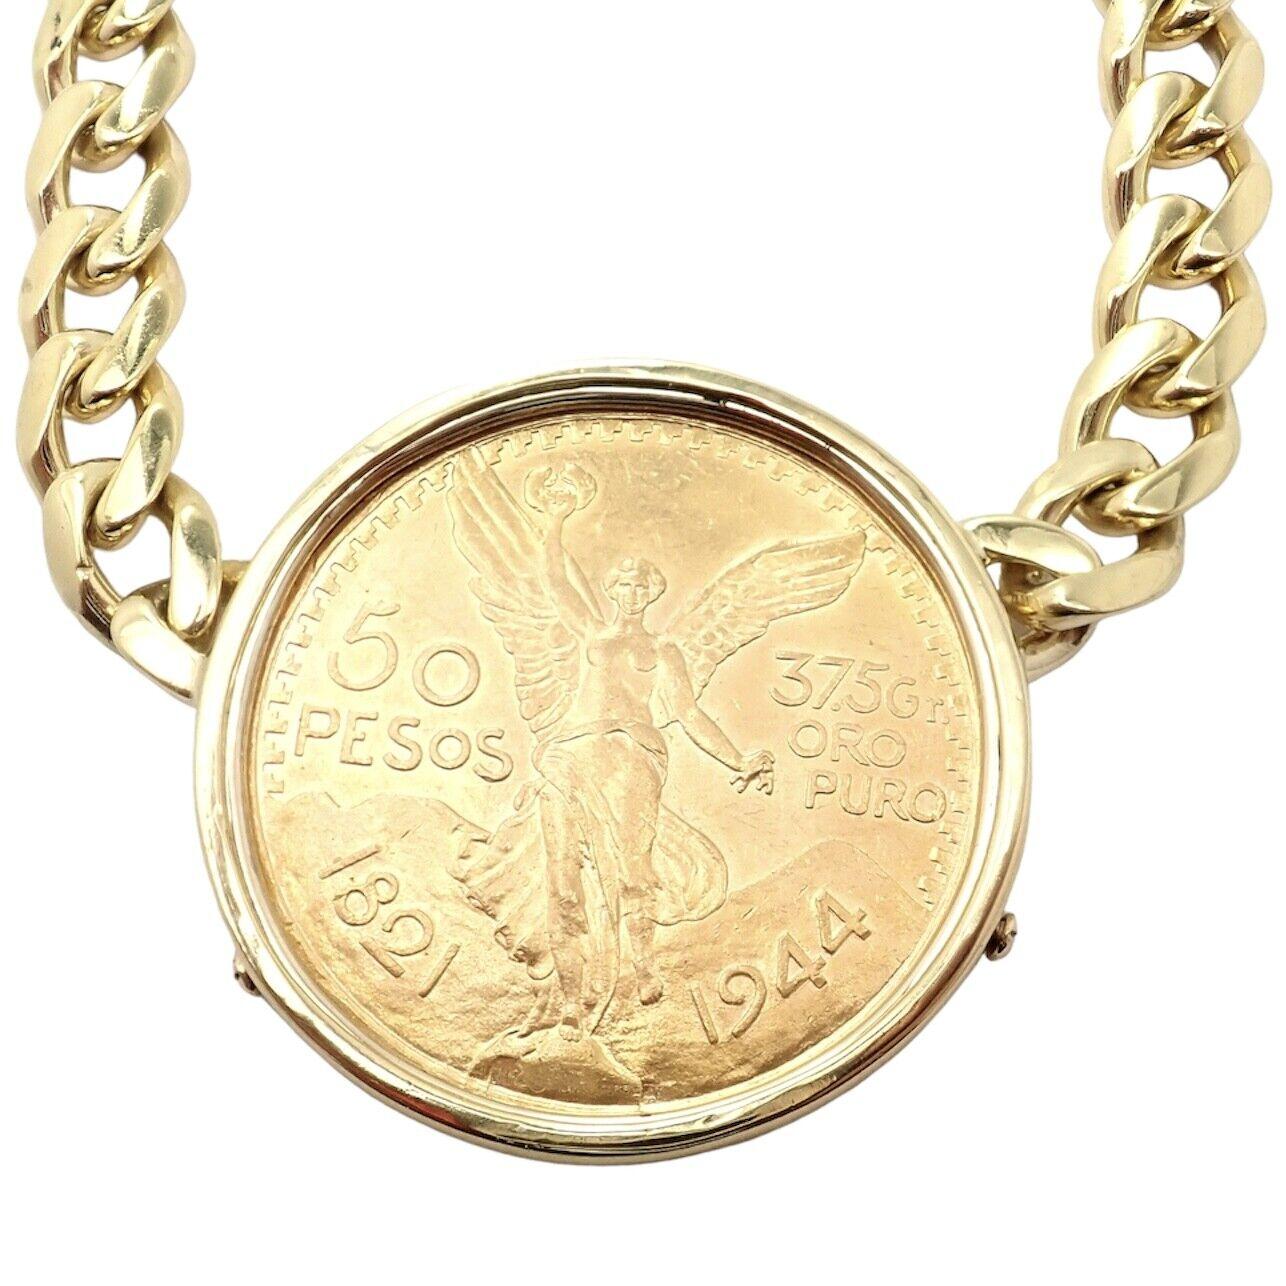 Bulgari 18k Gelbgold mit 22k Gold Centenario 50 Pesos Münze Anhänger Link Kette Halskette.
Einzelheiten:
Metall: Kette: 18k Gelbgold
Münze: 1,205 Feinunzen Gold (das Gesamtgewicht der Münze beträgt 1,33 Unzen) Ungefähr +90% reines Gold
Abmessungen: